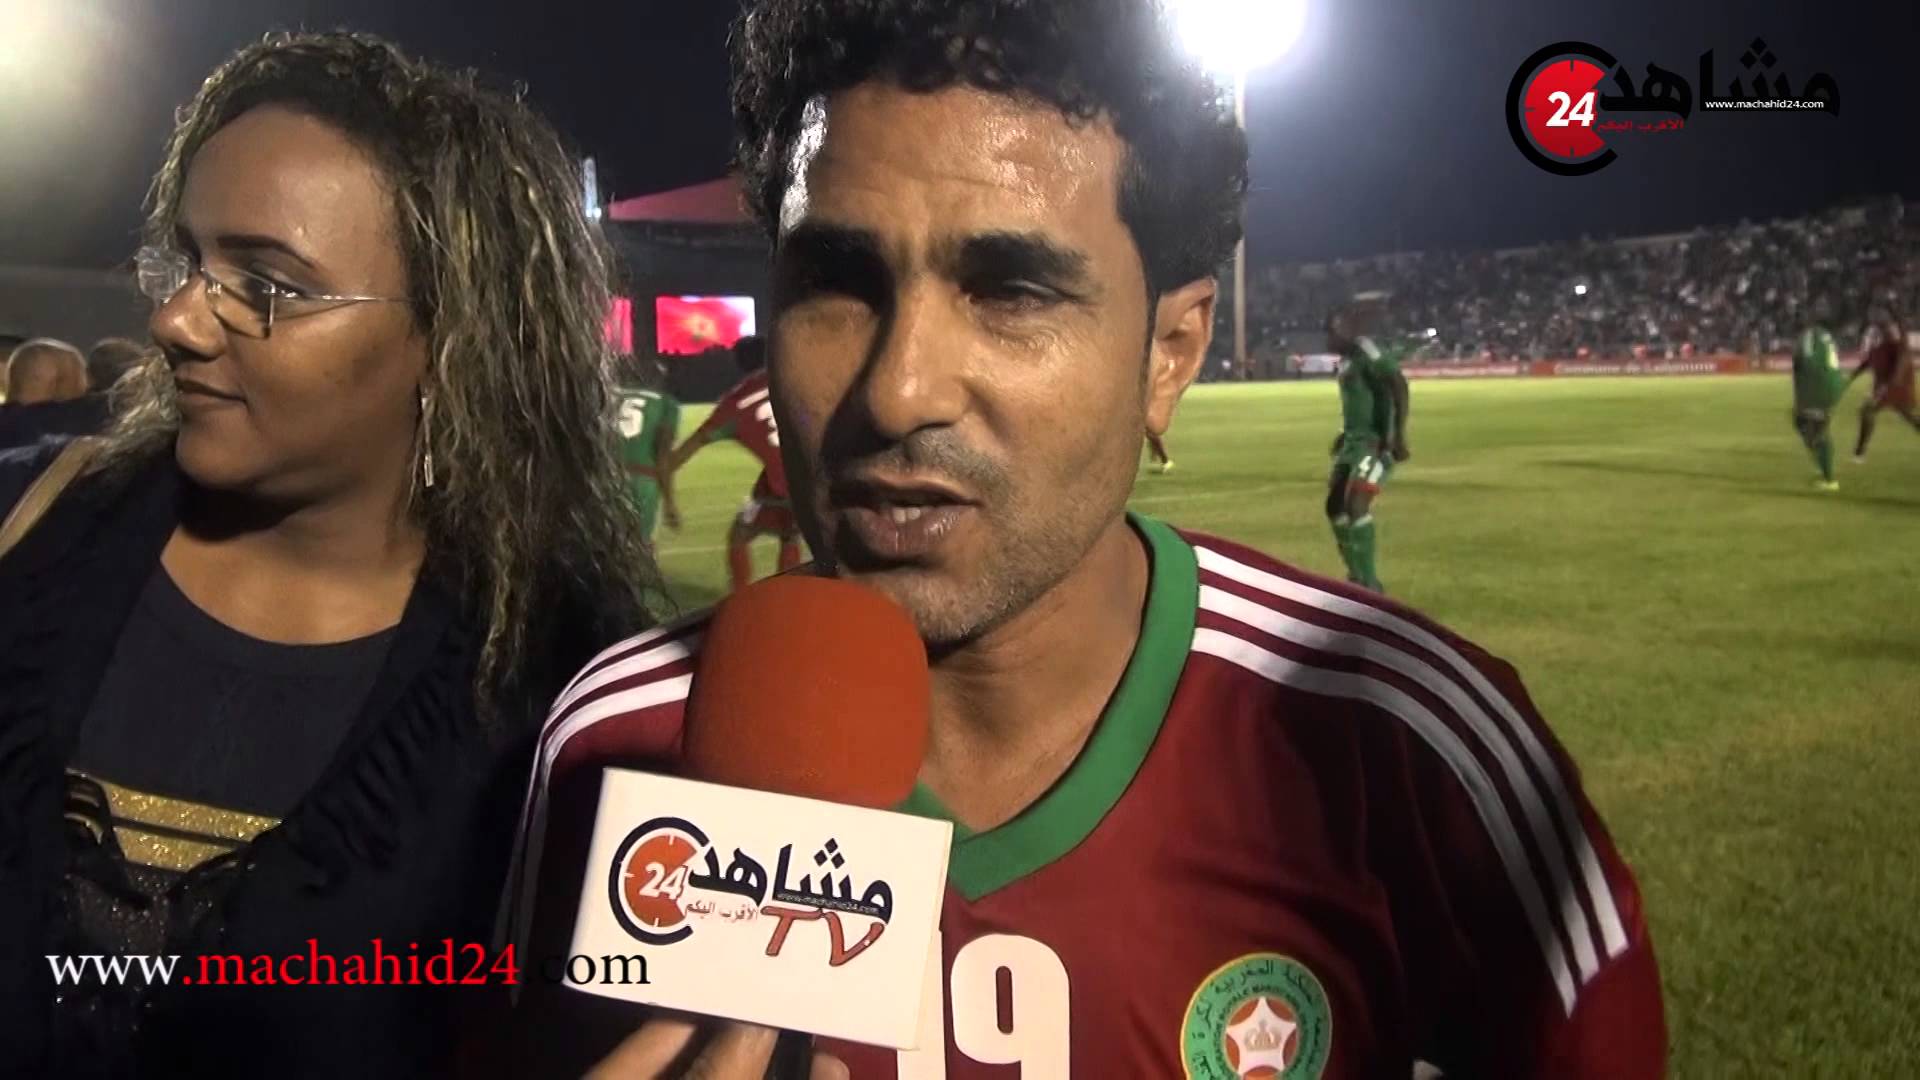 بصير وحجي يتحدثان عن مباراة النجوم بمدينة العيون